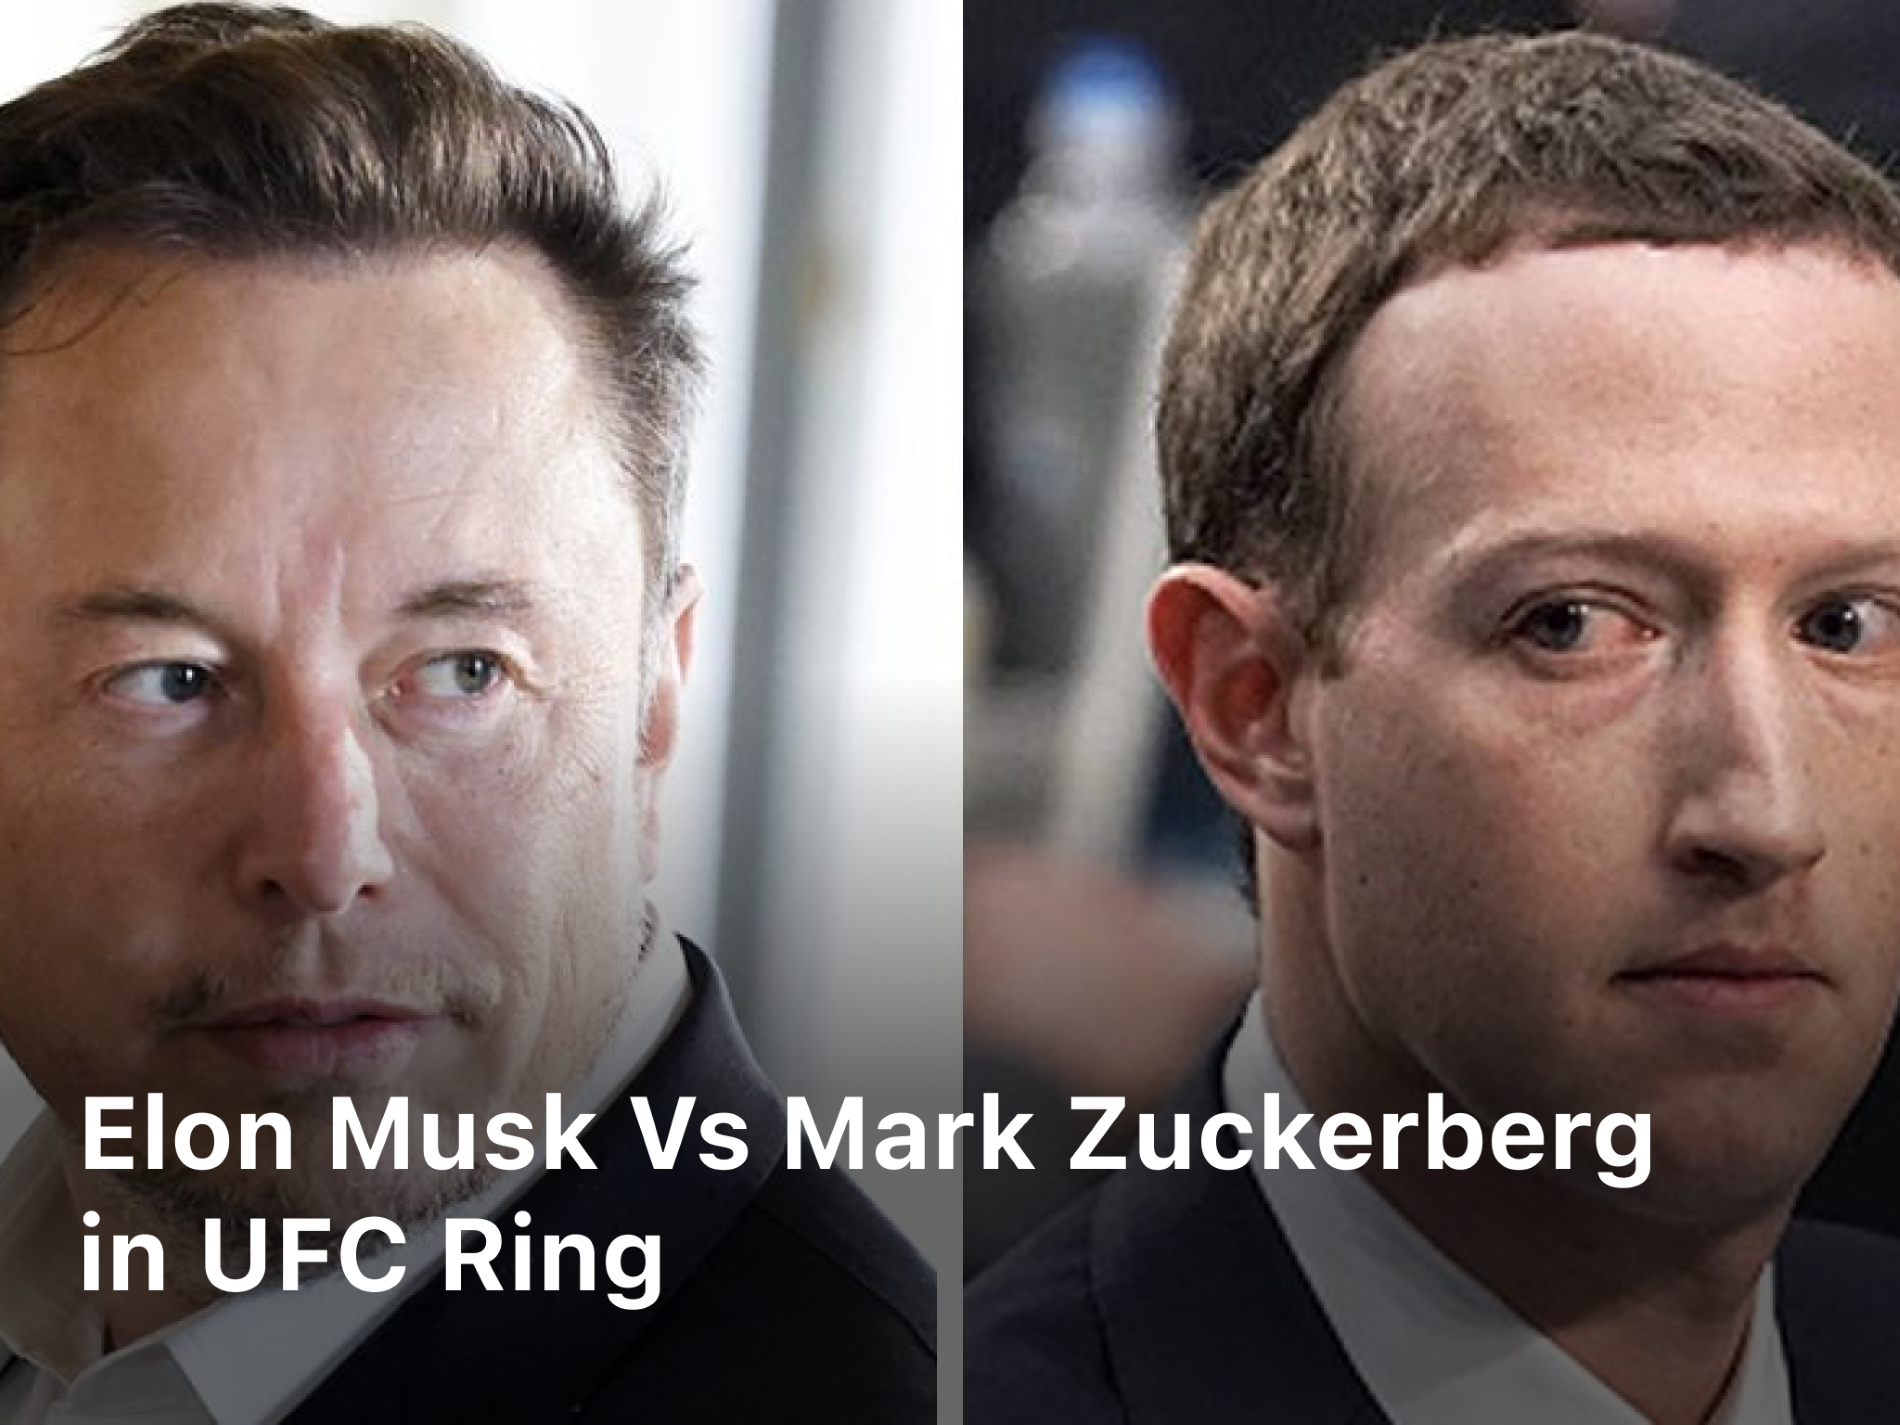 Ellon Musk vs Mark Zuckerberg